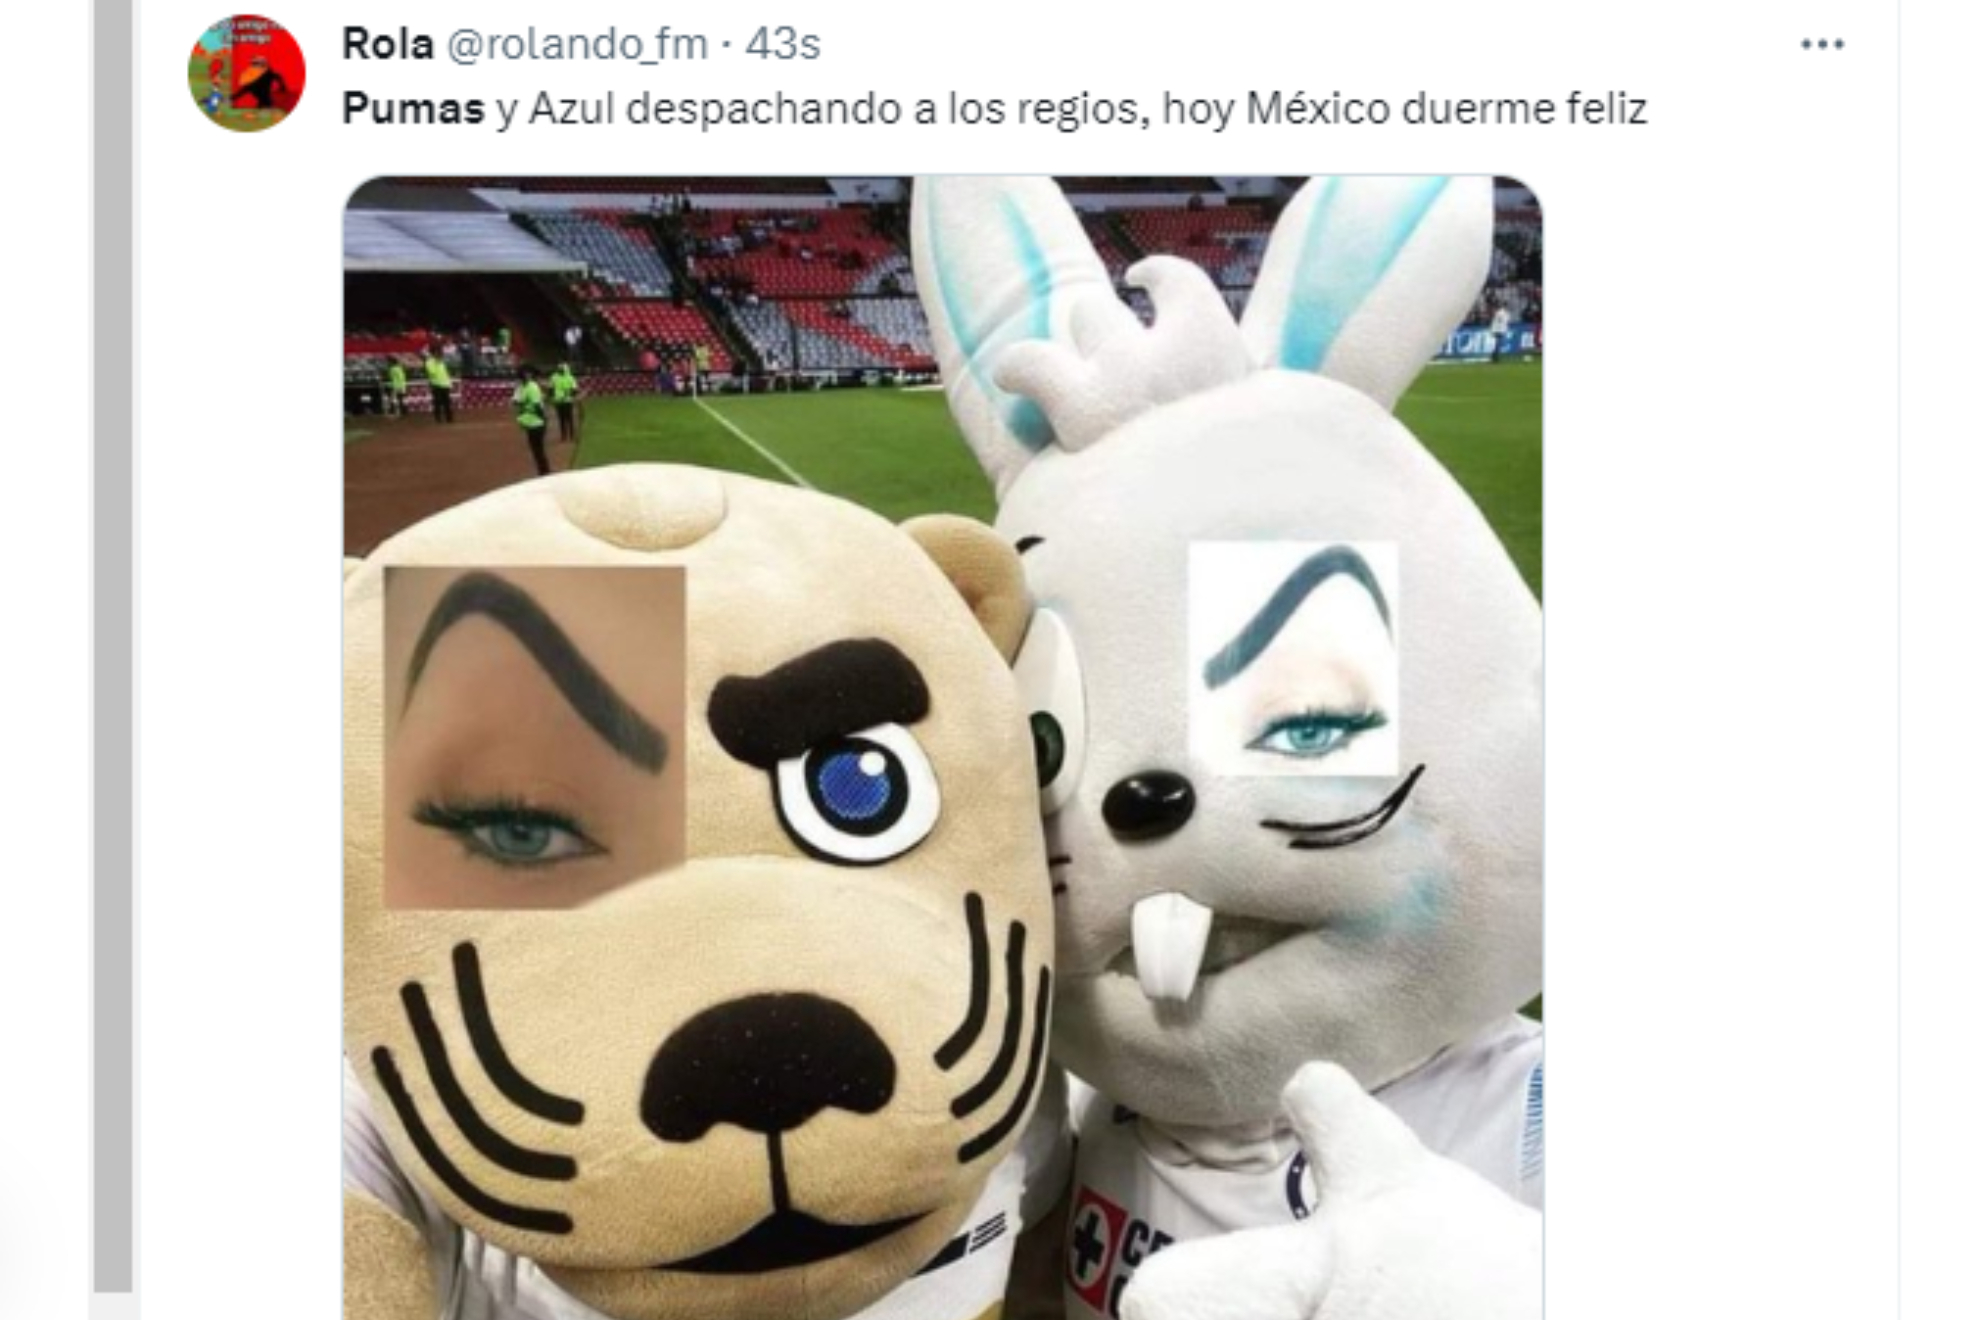 Los de Ciudad Universitaria derrotaron en casa a Tigres, mientras que la 'Máquina Cementera' venció a Monterrey en el 'Gigante de Acero', ambos resultados improbables y ambos de equipos capitalinos sobre regiomontanos, ¿qué se dijo en redes sociales?